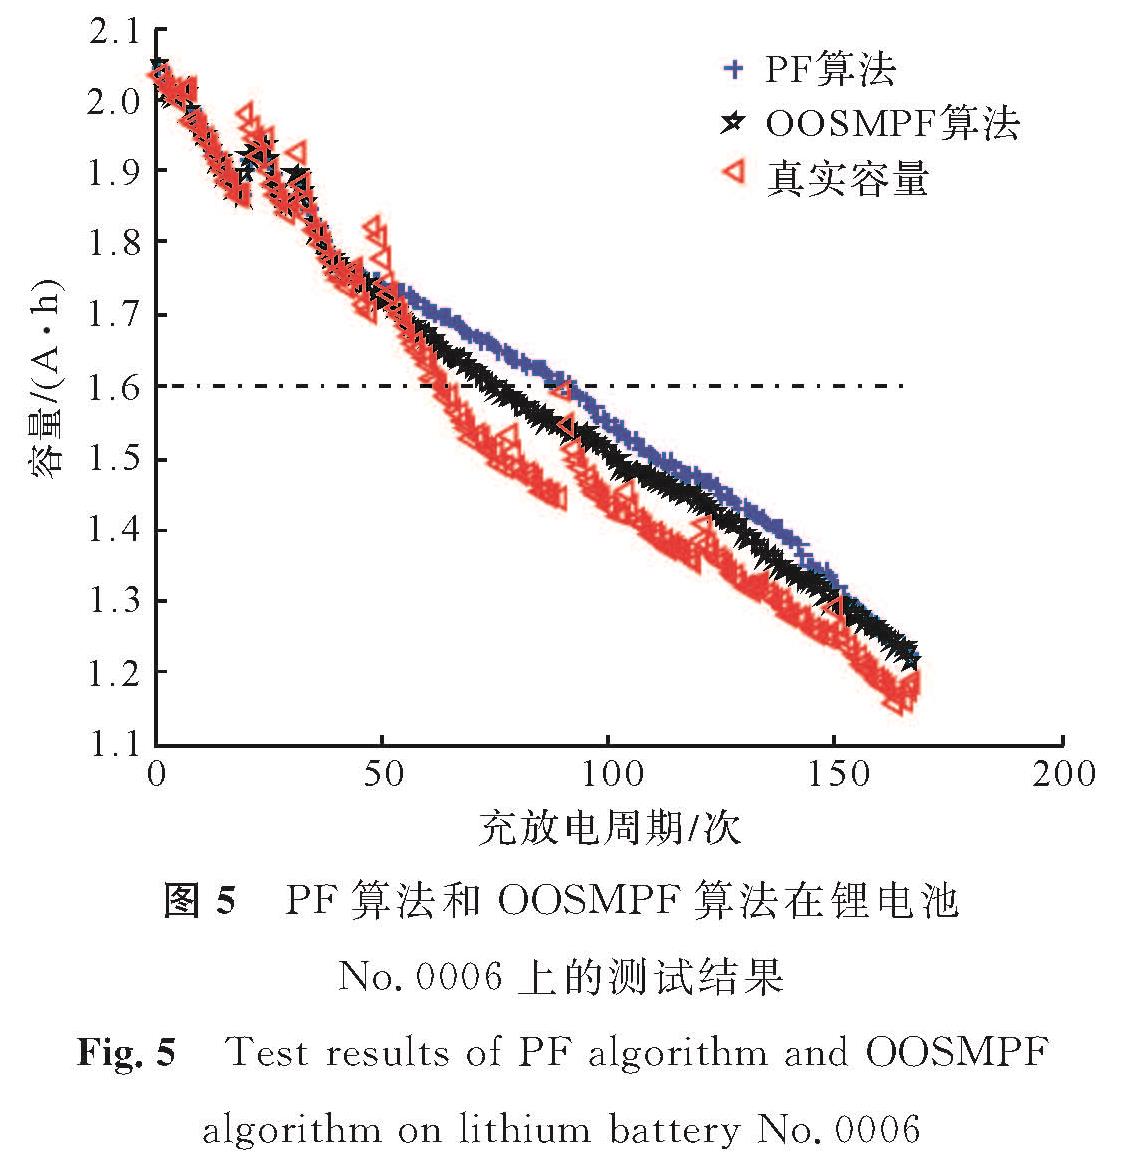 图5 PF算法和OOSMPF算法在锂电池No.0006上的测试结果<br/>Fig.5 Test results of PF algorithm and OOSMPF algorithm on lithium battery No.0006